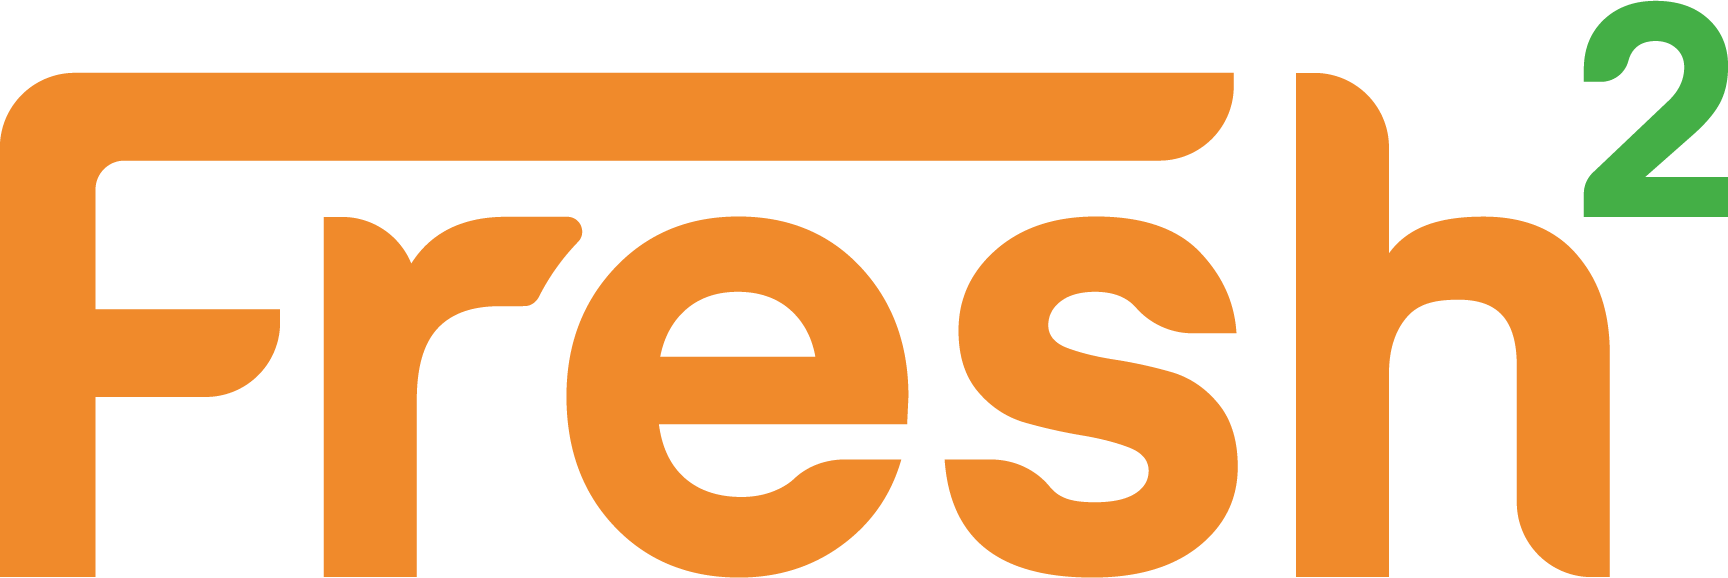 Fresh2 Group Ltd. Logo